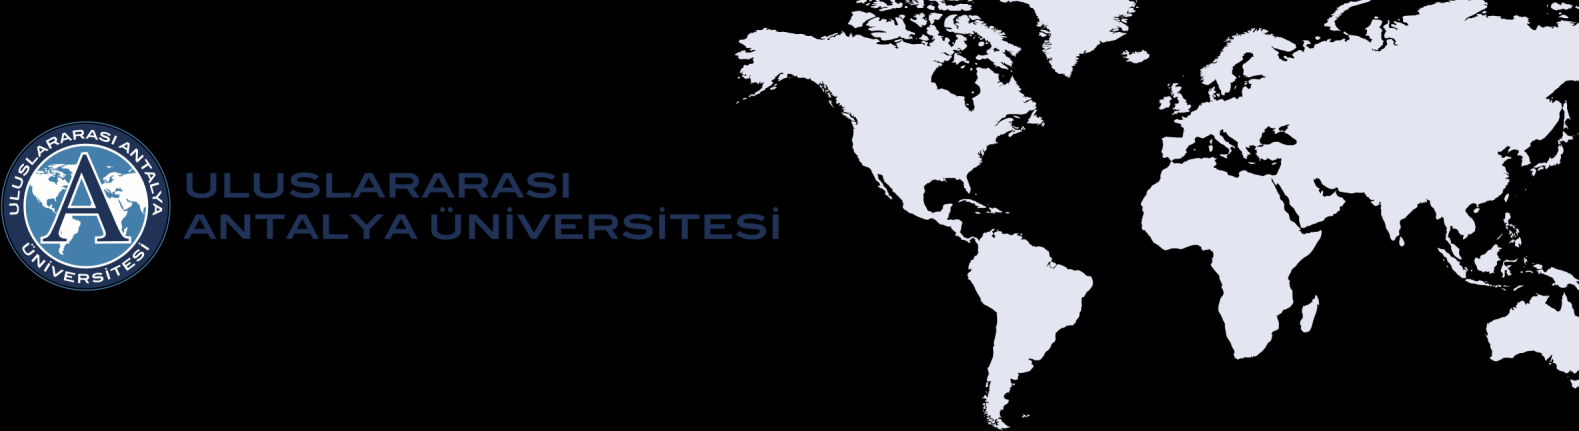 ULUSLARARASI ANTALYA ÜNİVERSİTESİ AKADEMİK YAYINLARI TEŞVİK YÖNERGESİ BİRİNCİ BÖLÜM Amaç ve Kapsam Madde 1- Bu yönergenin amacı Uluslararası Antalya Üniversitesi nde (UAÜ) görevli Öğretim Üyelerinin